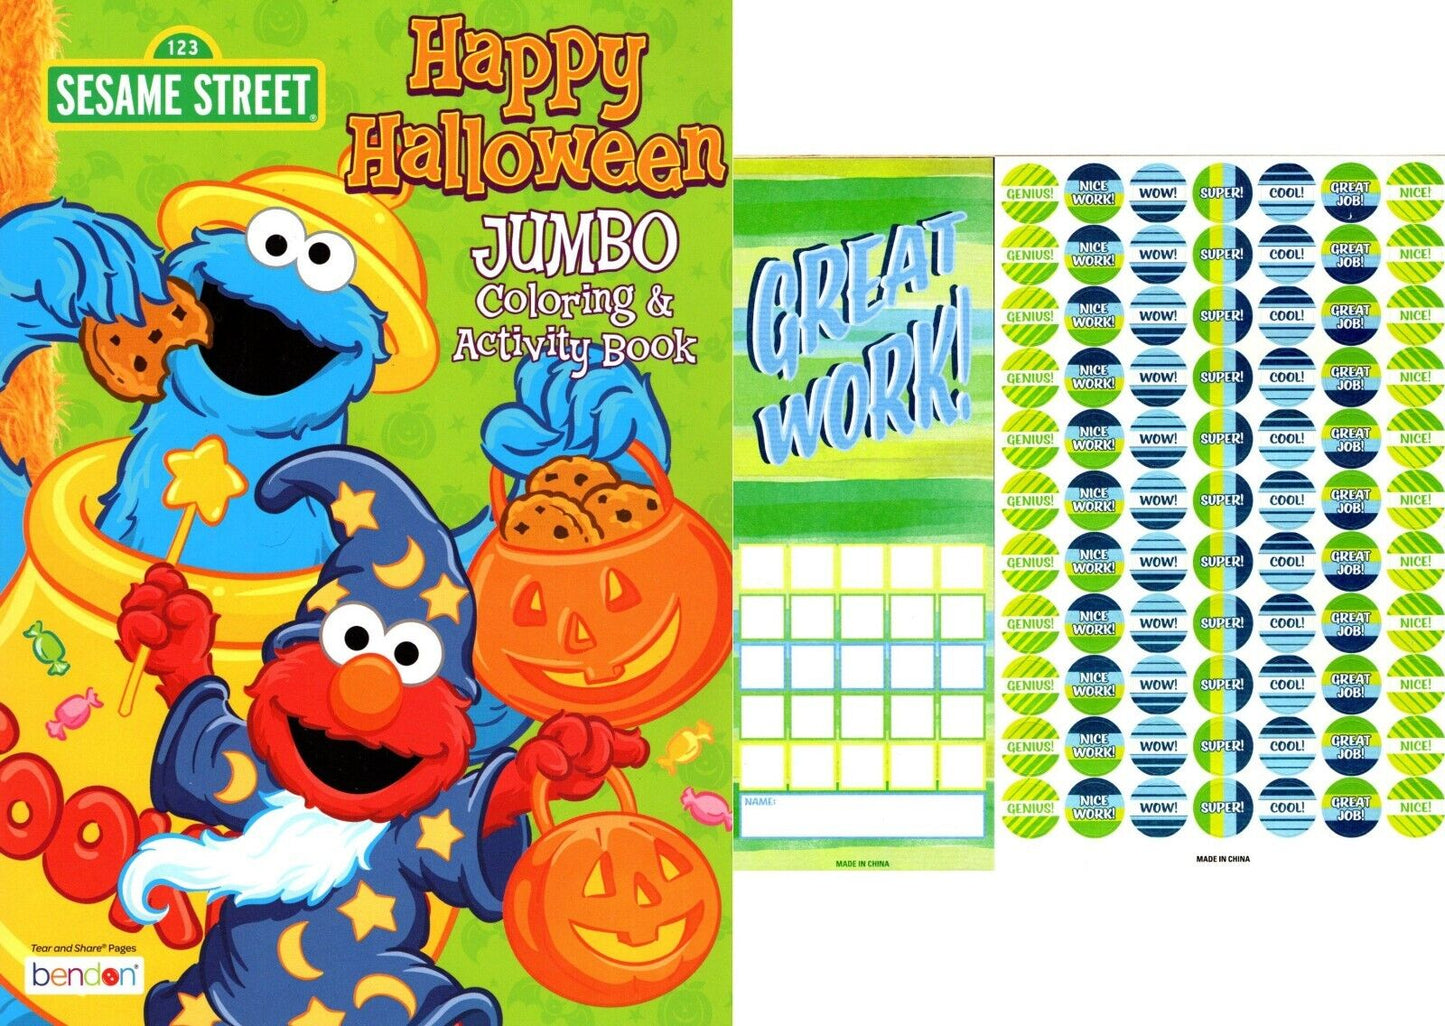 Sesame Street - Happy Halloween - Halloween Jumbo Coloring & Activity Book